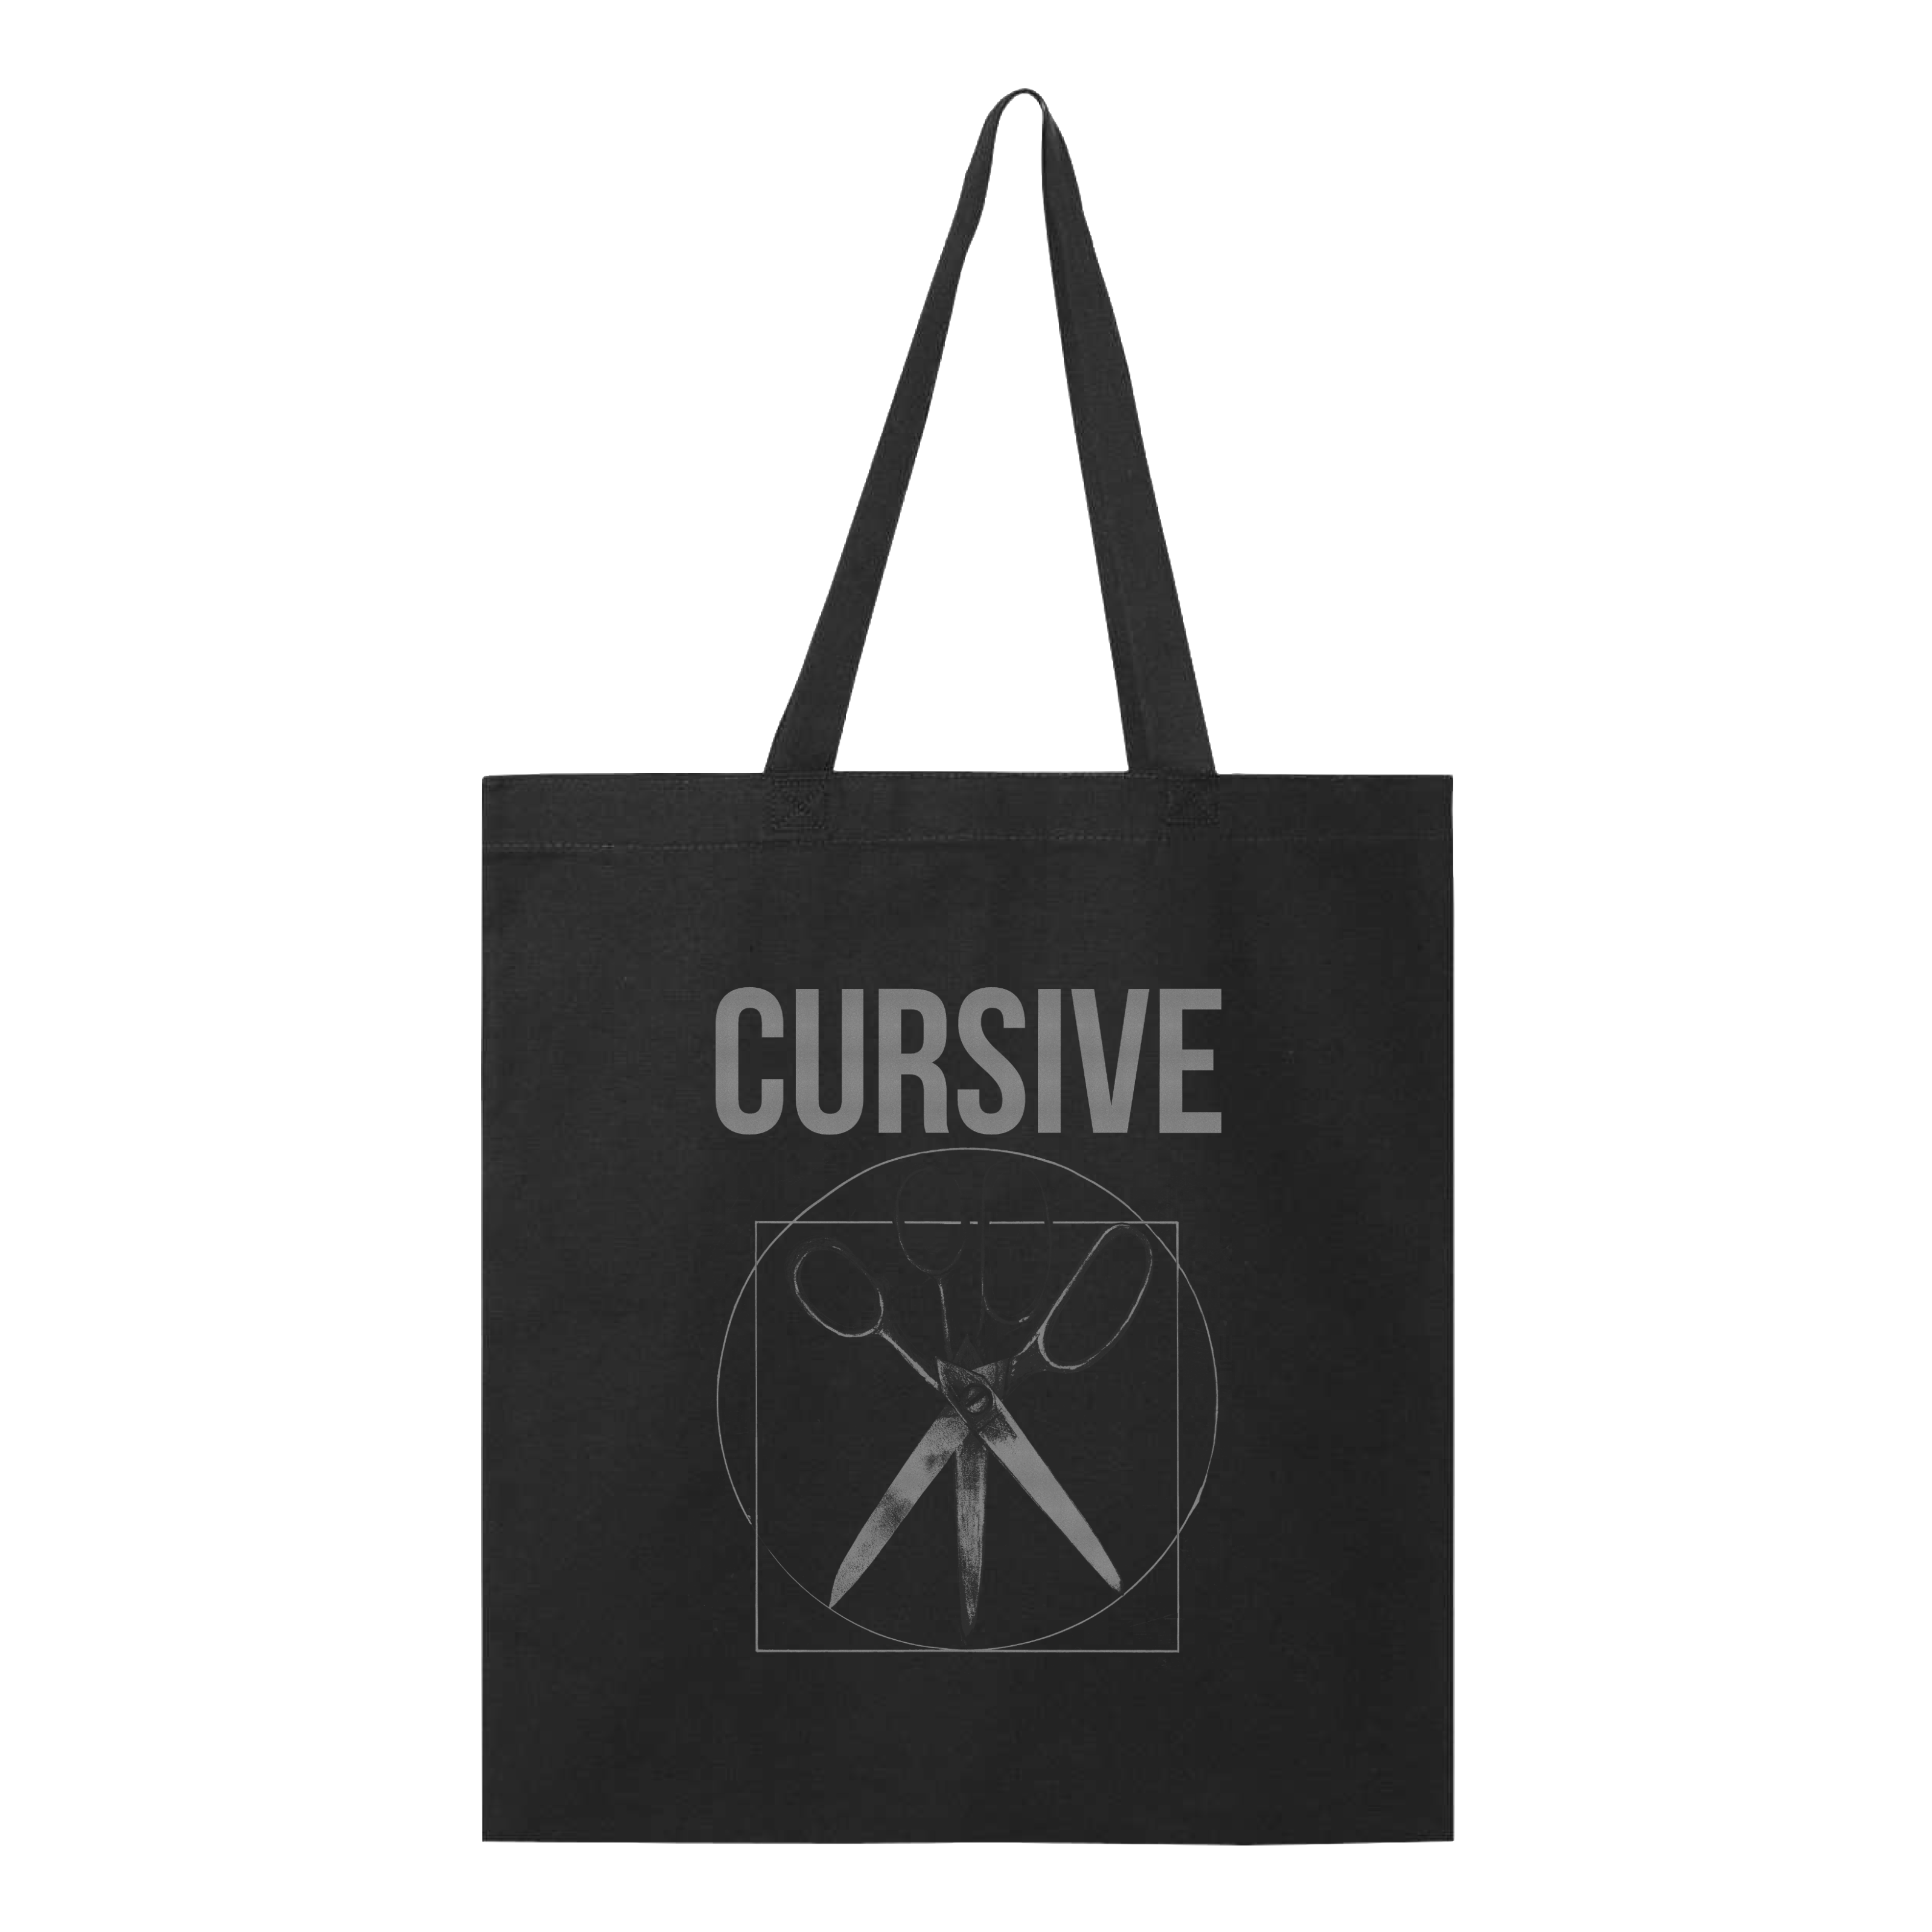 Cursive - Get Fixed Tote Bag